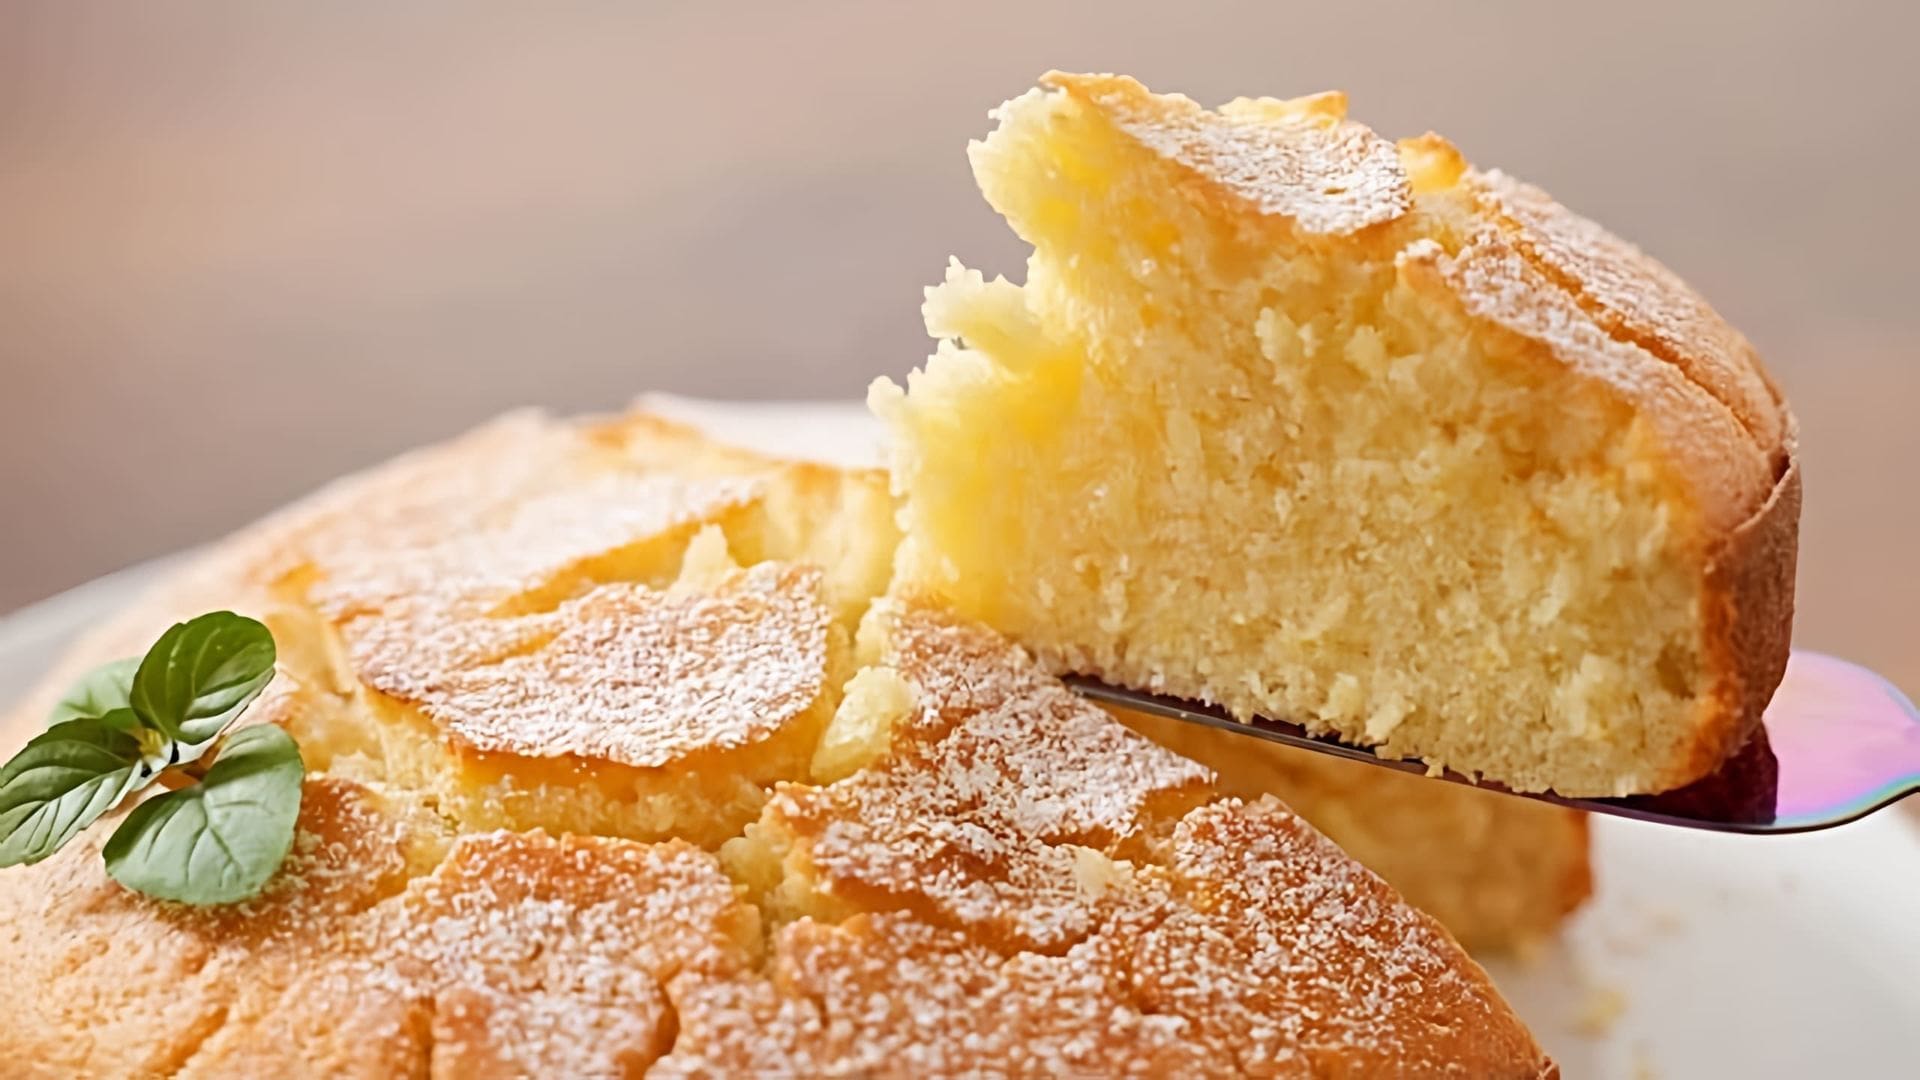 В этом видео демонстрируется рецепт лимонного пирога, который готовится всего из 1 яйца и 1 лимона